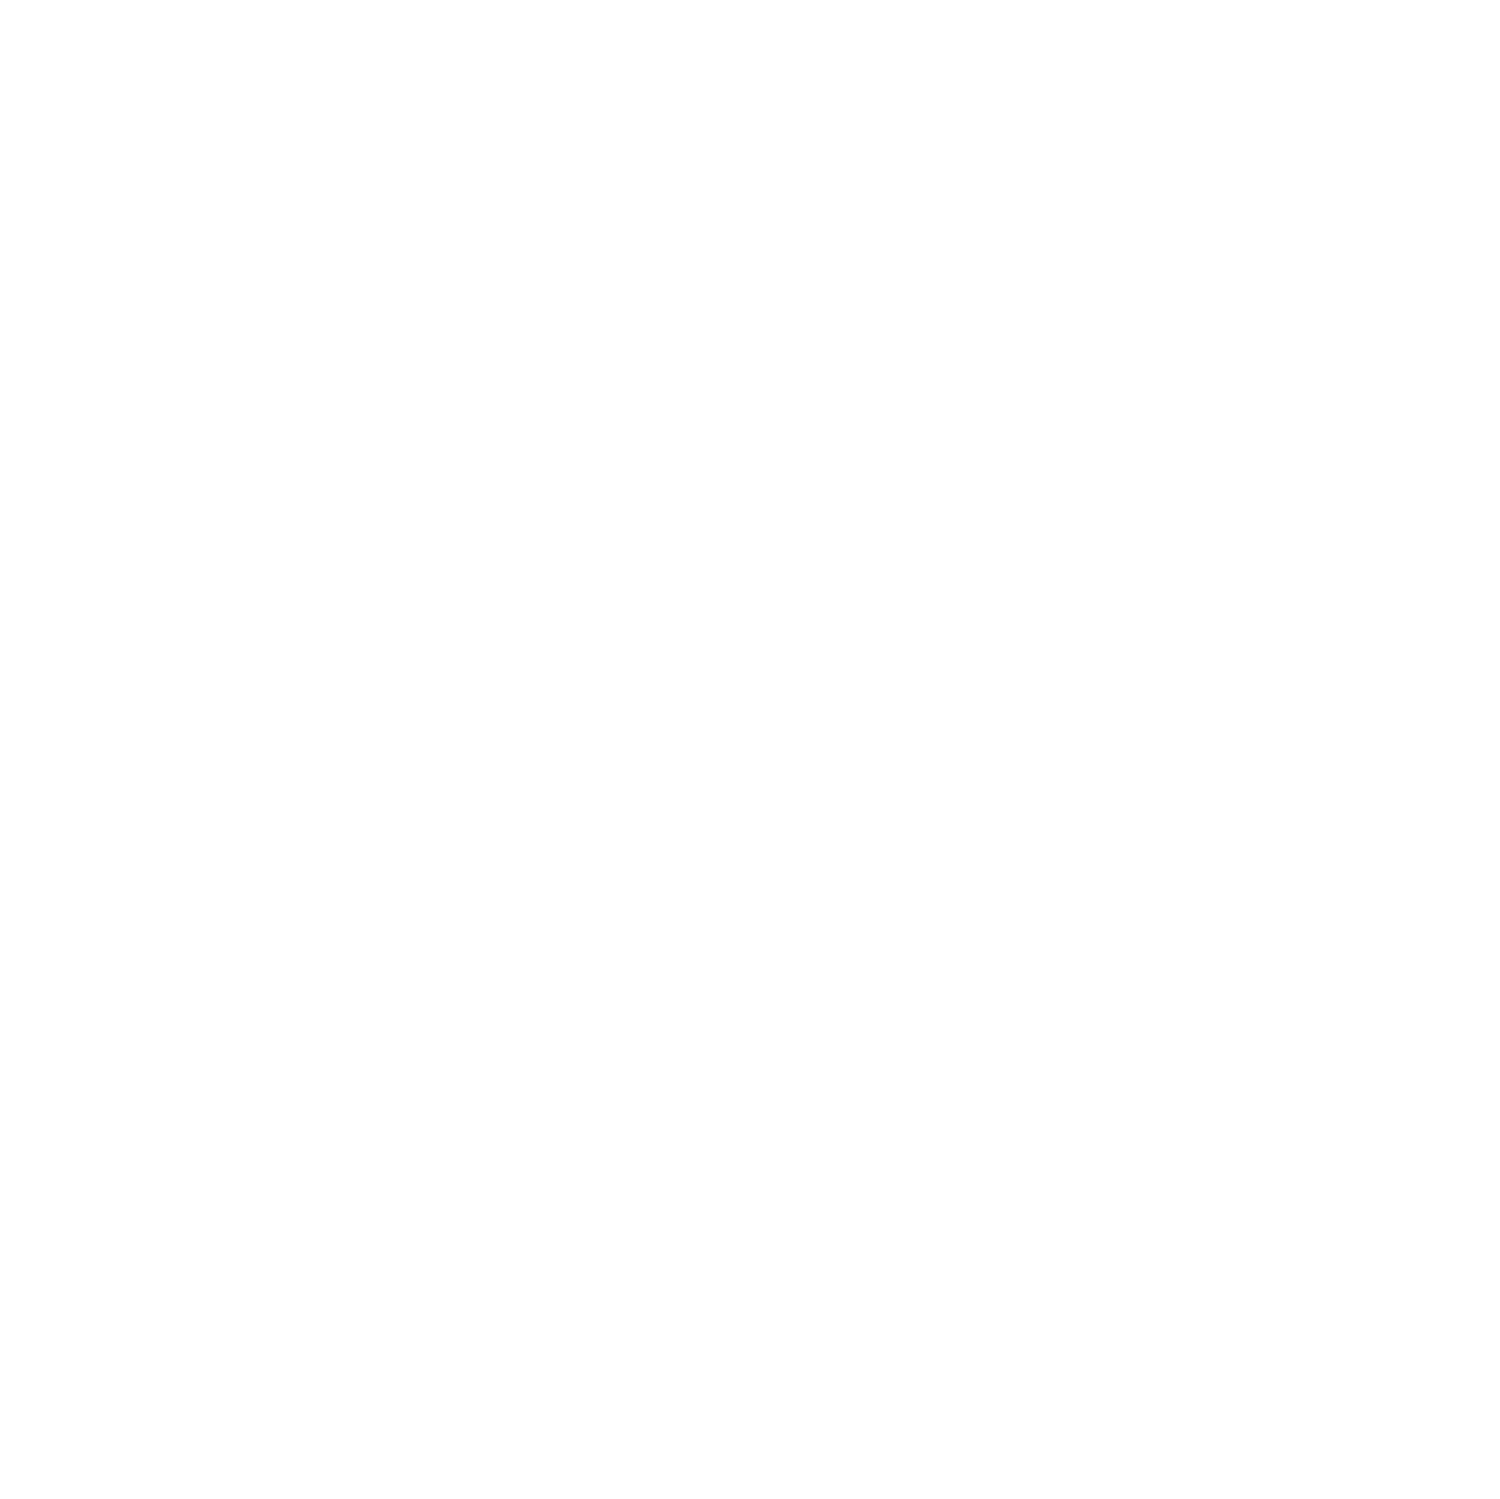 P.A. Agency